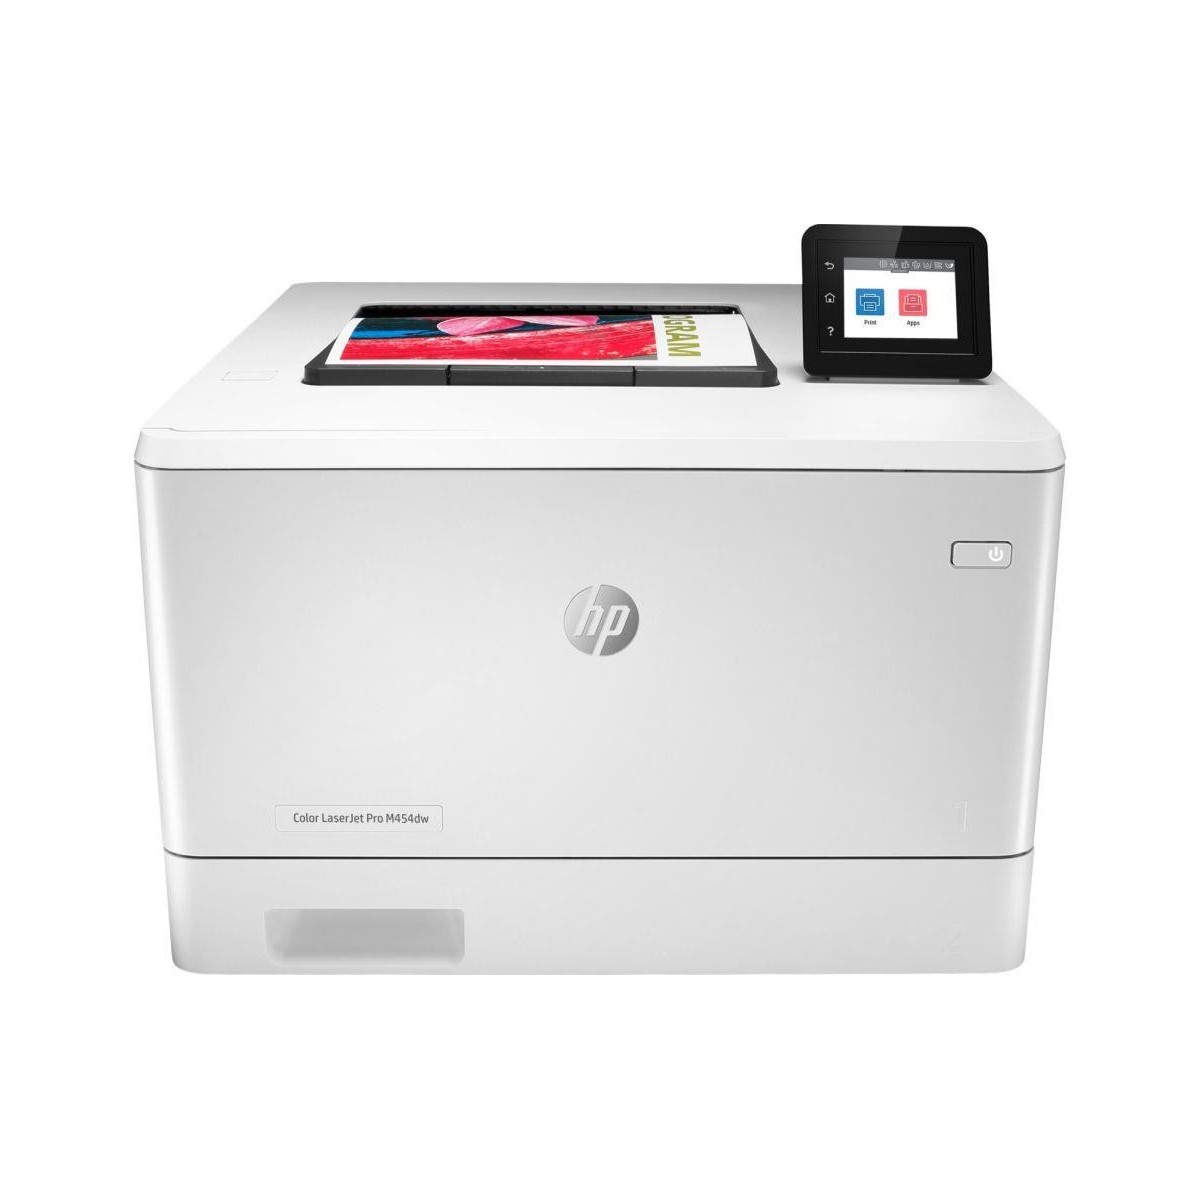 HP Color LaserJet Pro M454dw - Laser - Colour - 600 x 600 DPI - A4 - 28 ppm - Duplex printing